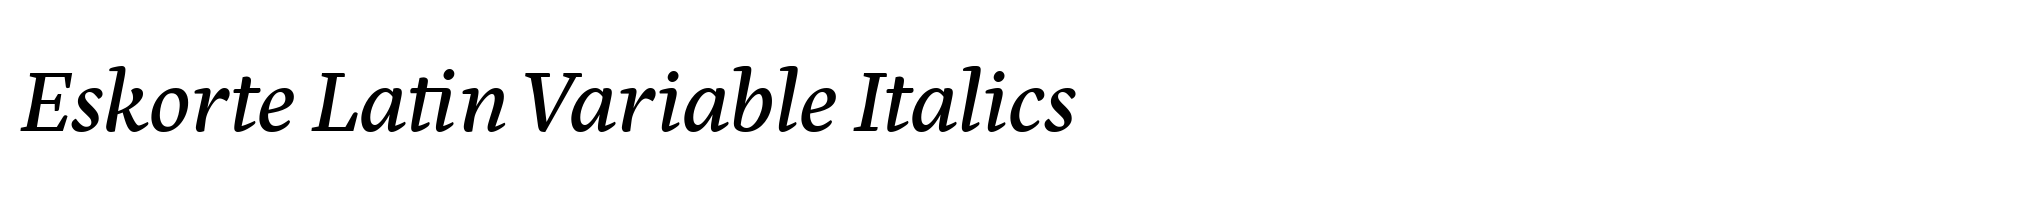 Eskorte Latin Variable Italics image